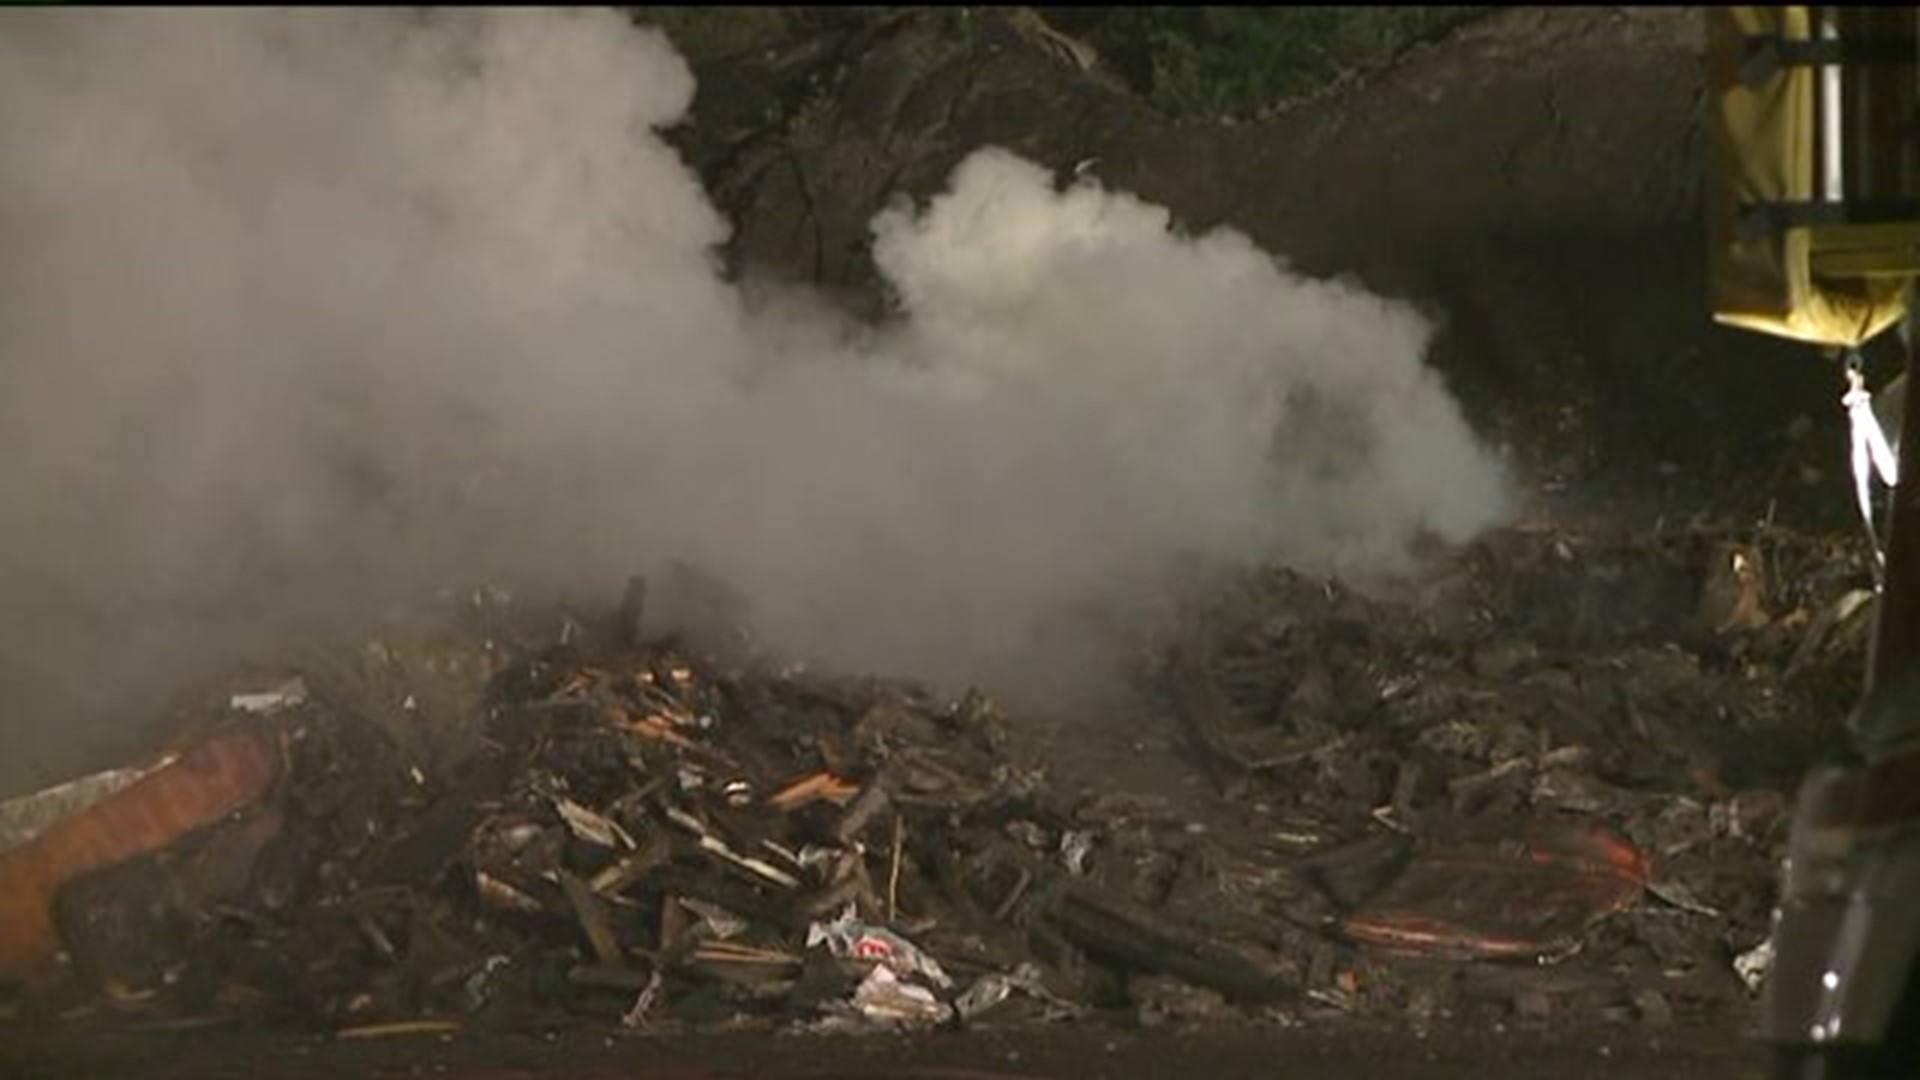 Firefighters Battling Trash Fire in Lackawanna County